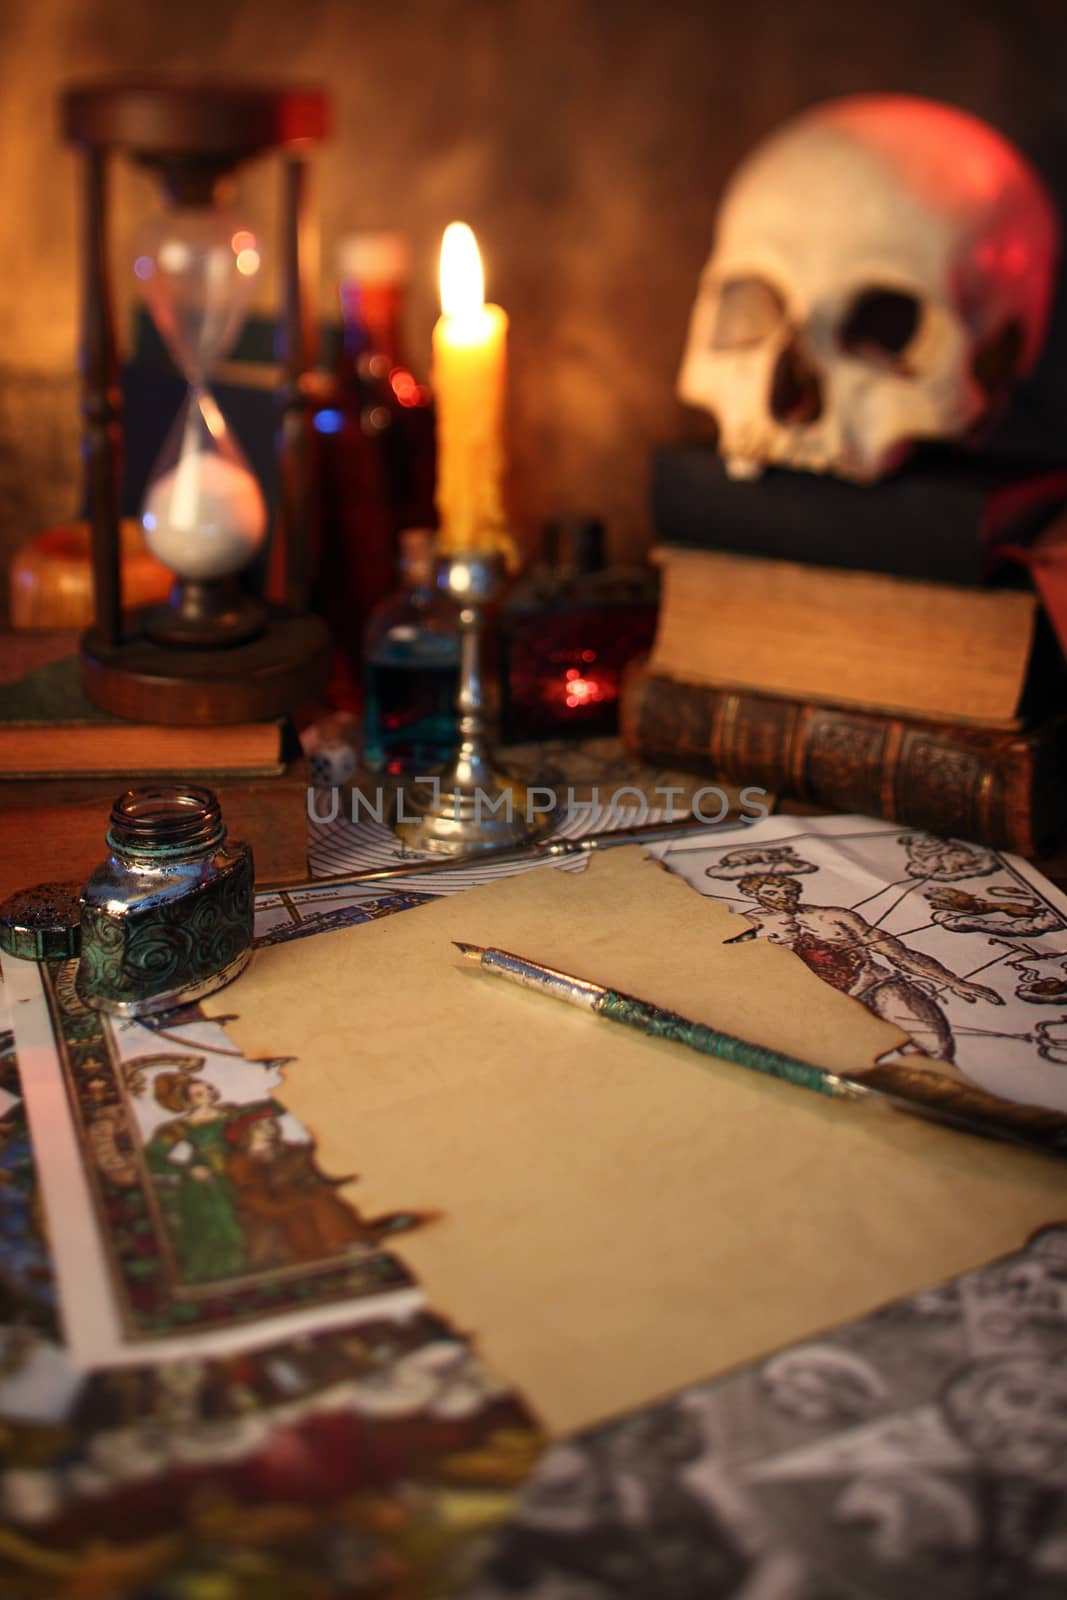 The desk of an alchemist  by alexkosev